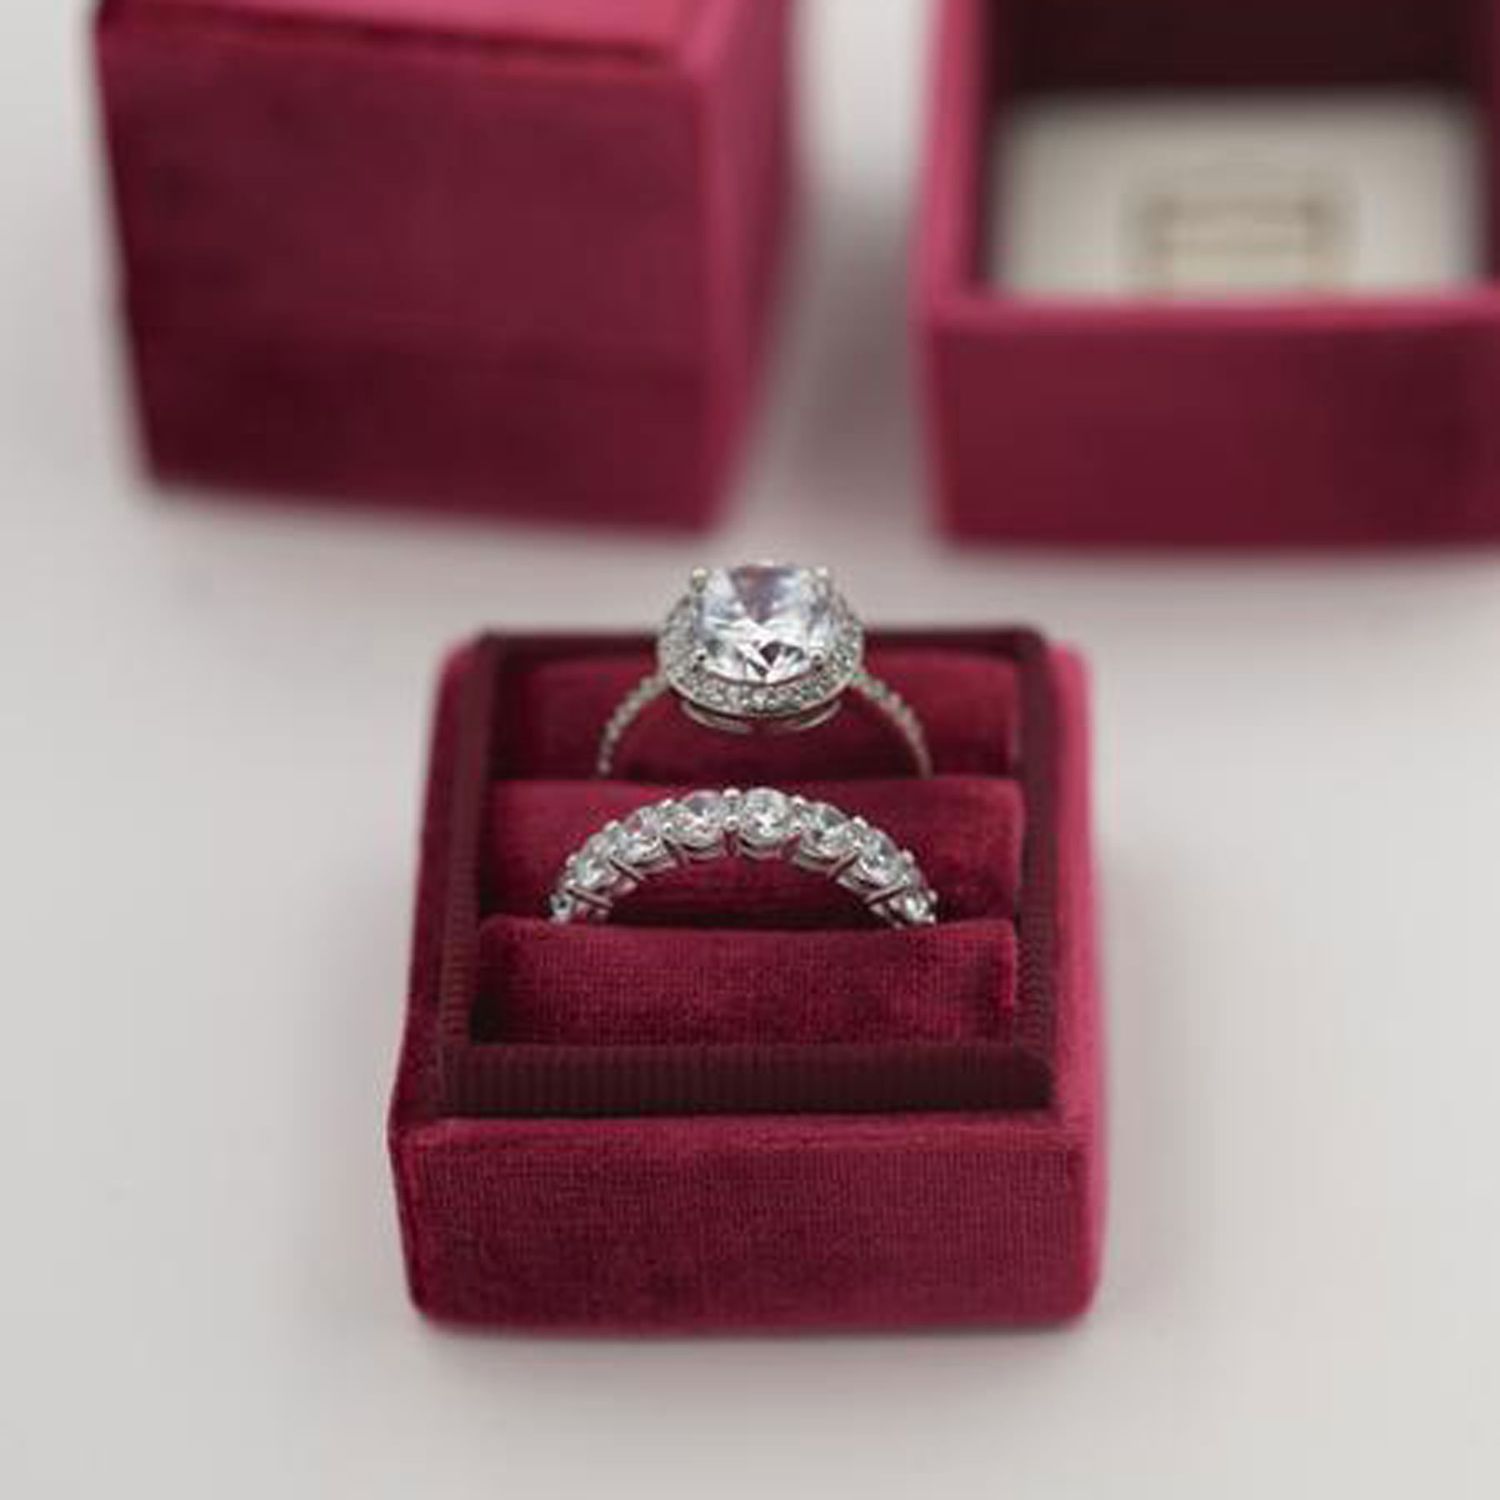 Engagement Gift ideas: The Mrs. Box velvet engagement ring box